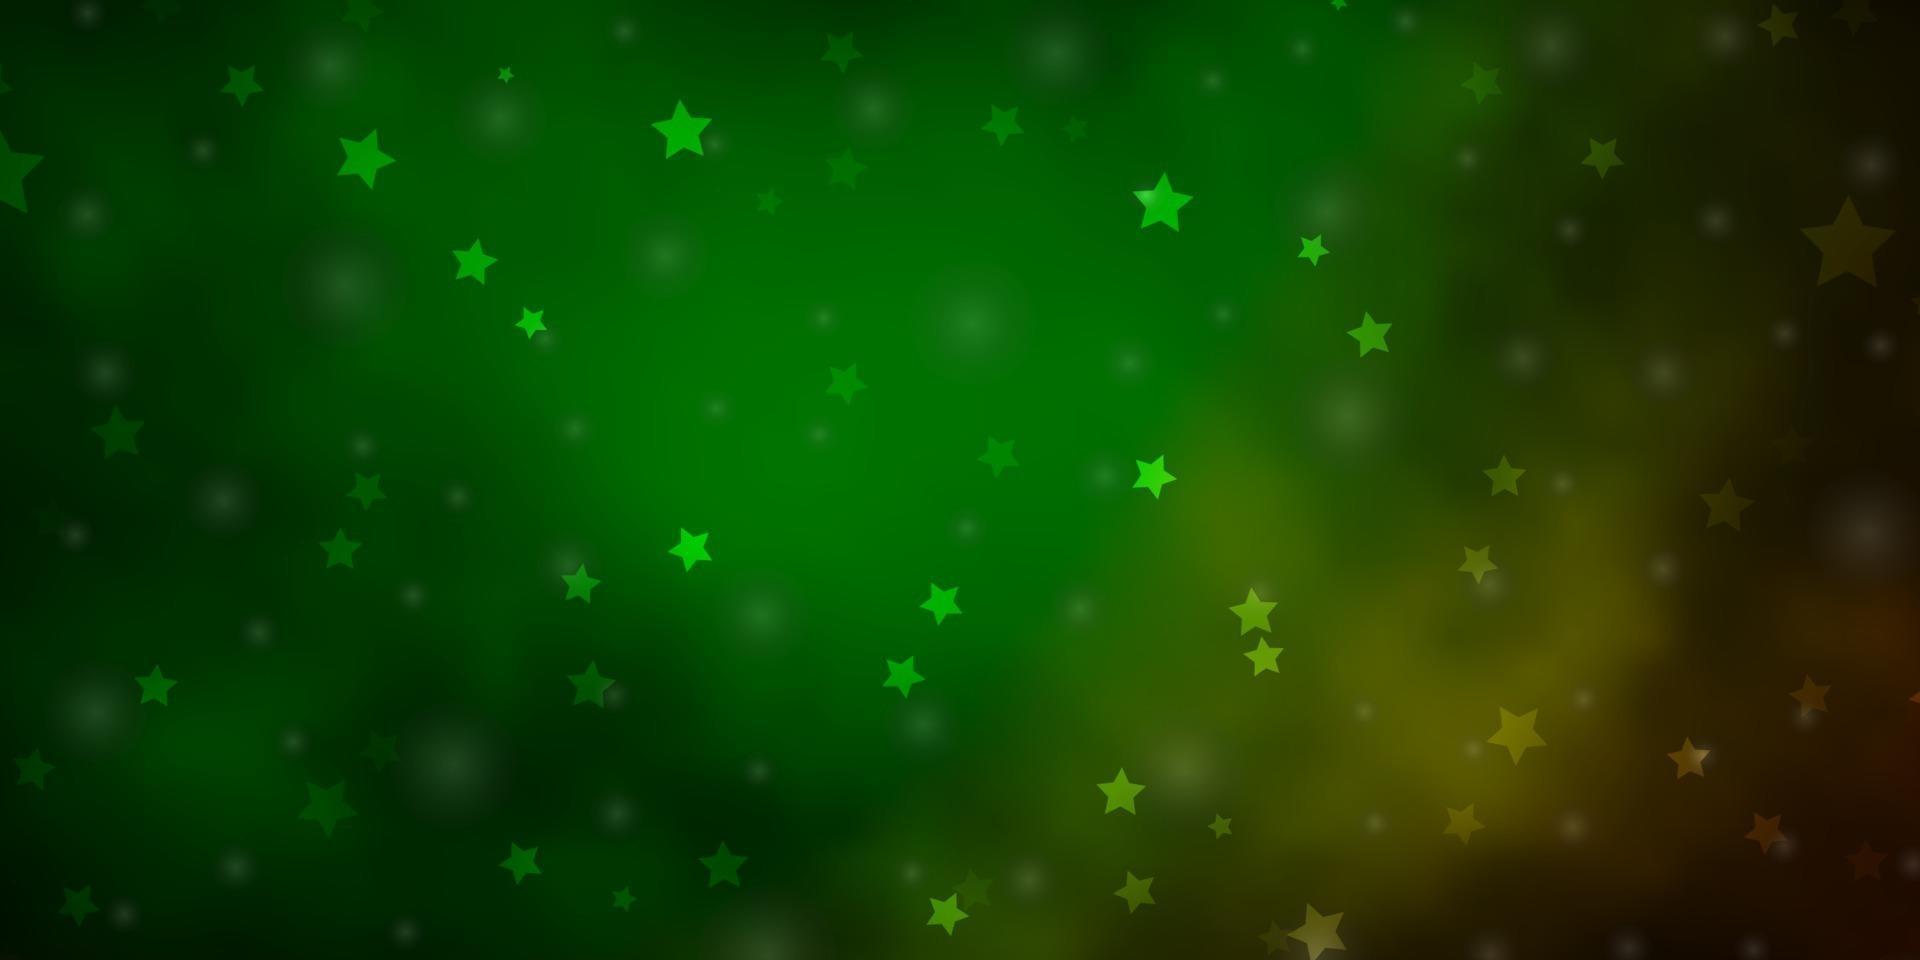 layout de vetor verde escuro com estrelas brilhantes.